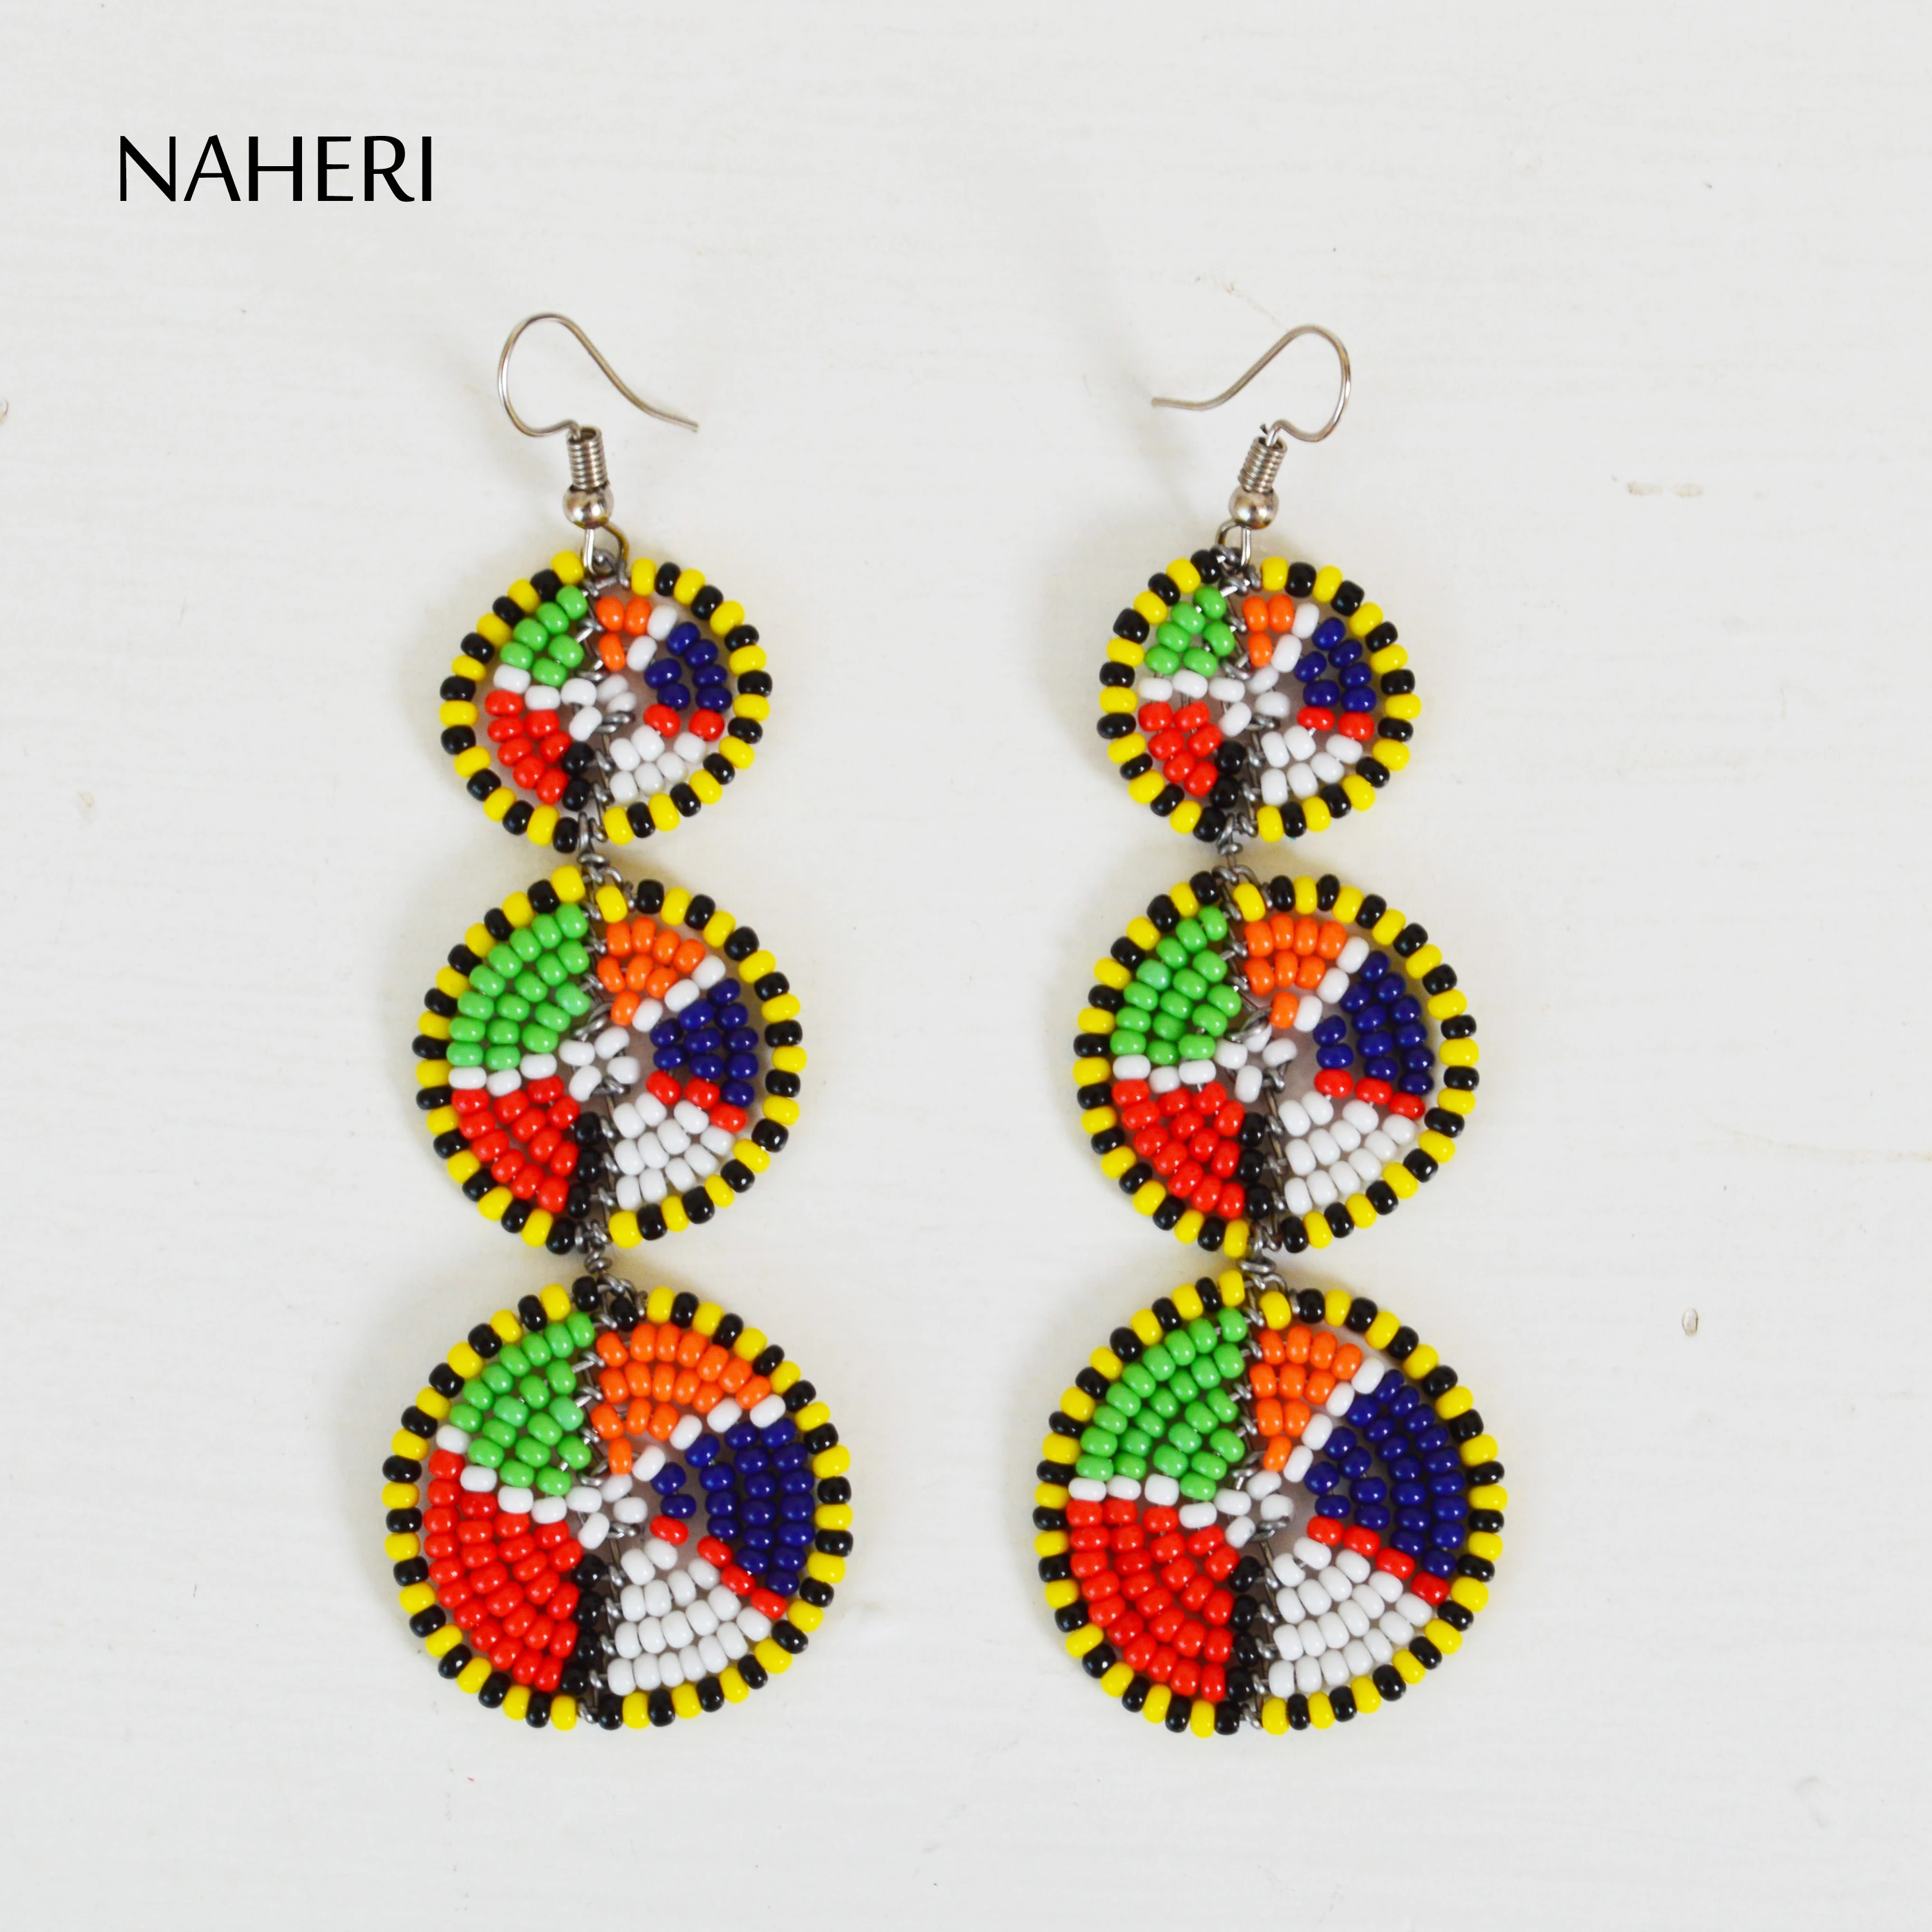 masai beads earrings beaded earrings masai earrings african earrings gift for her masai earrings kenya earrings statement earrings